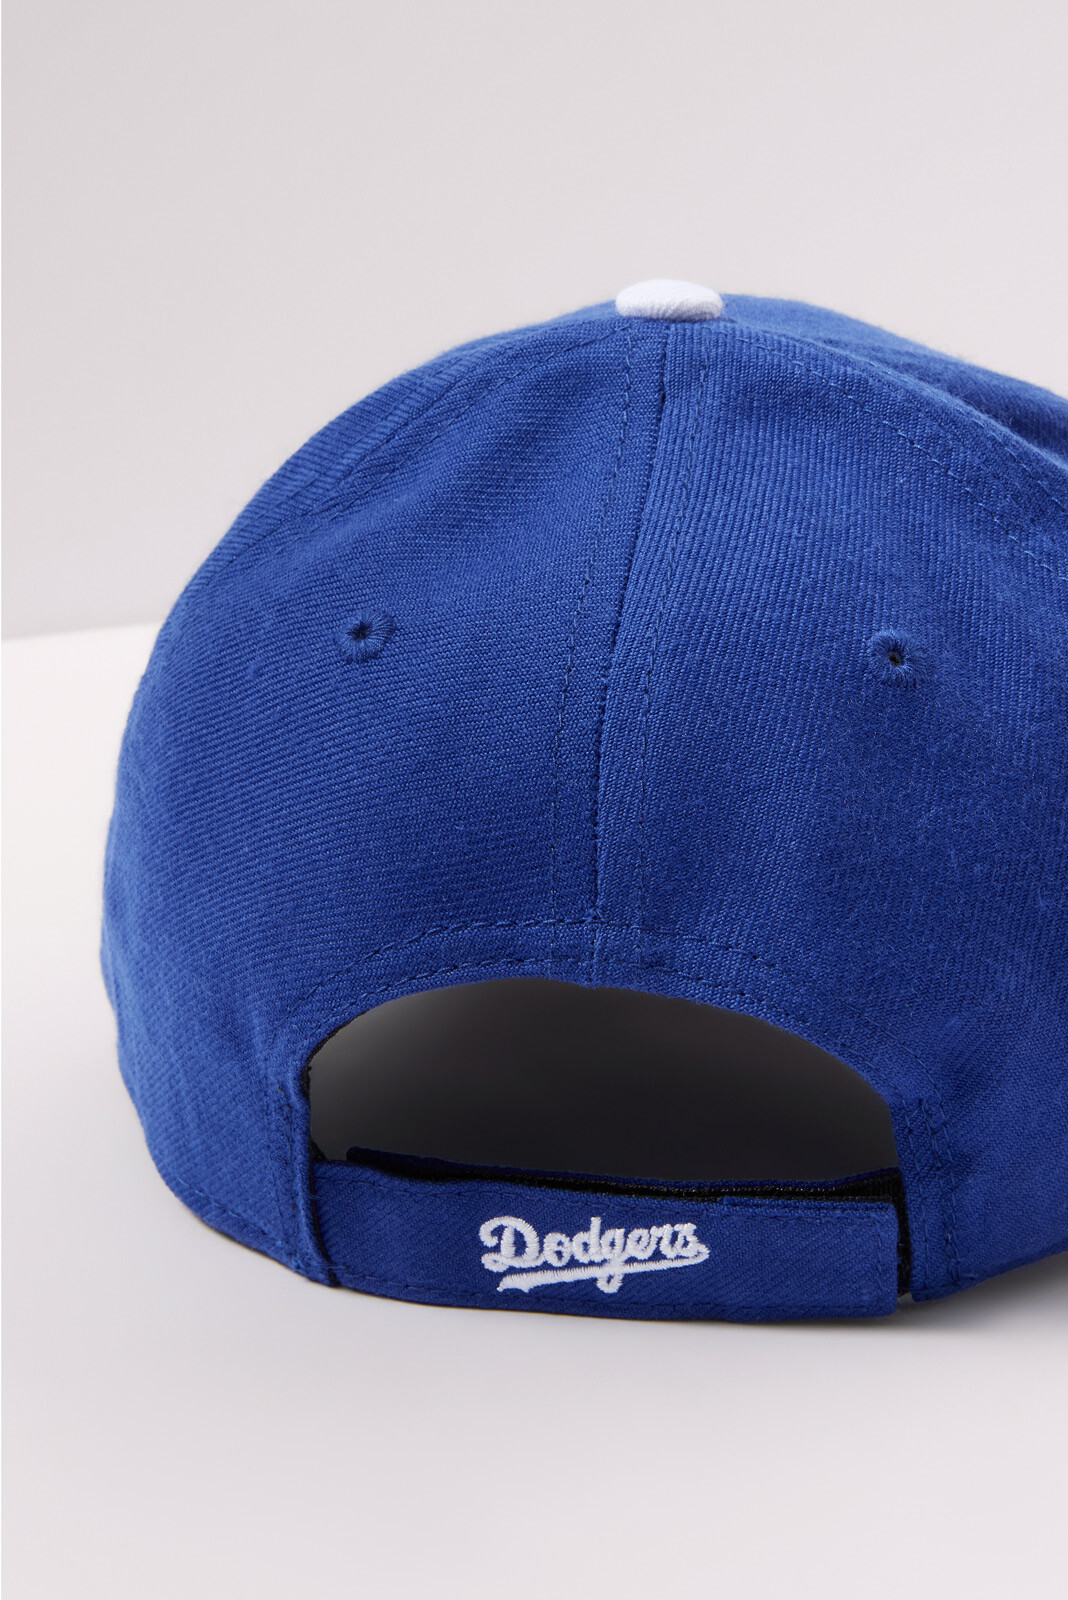 LA MVP Baseball Hat